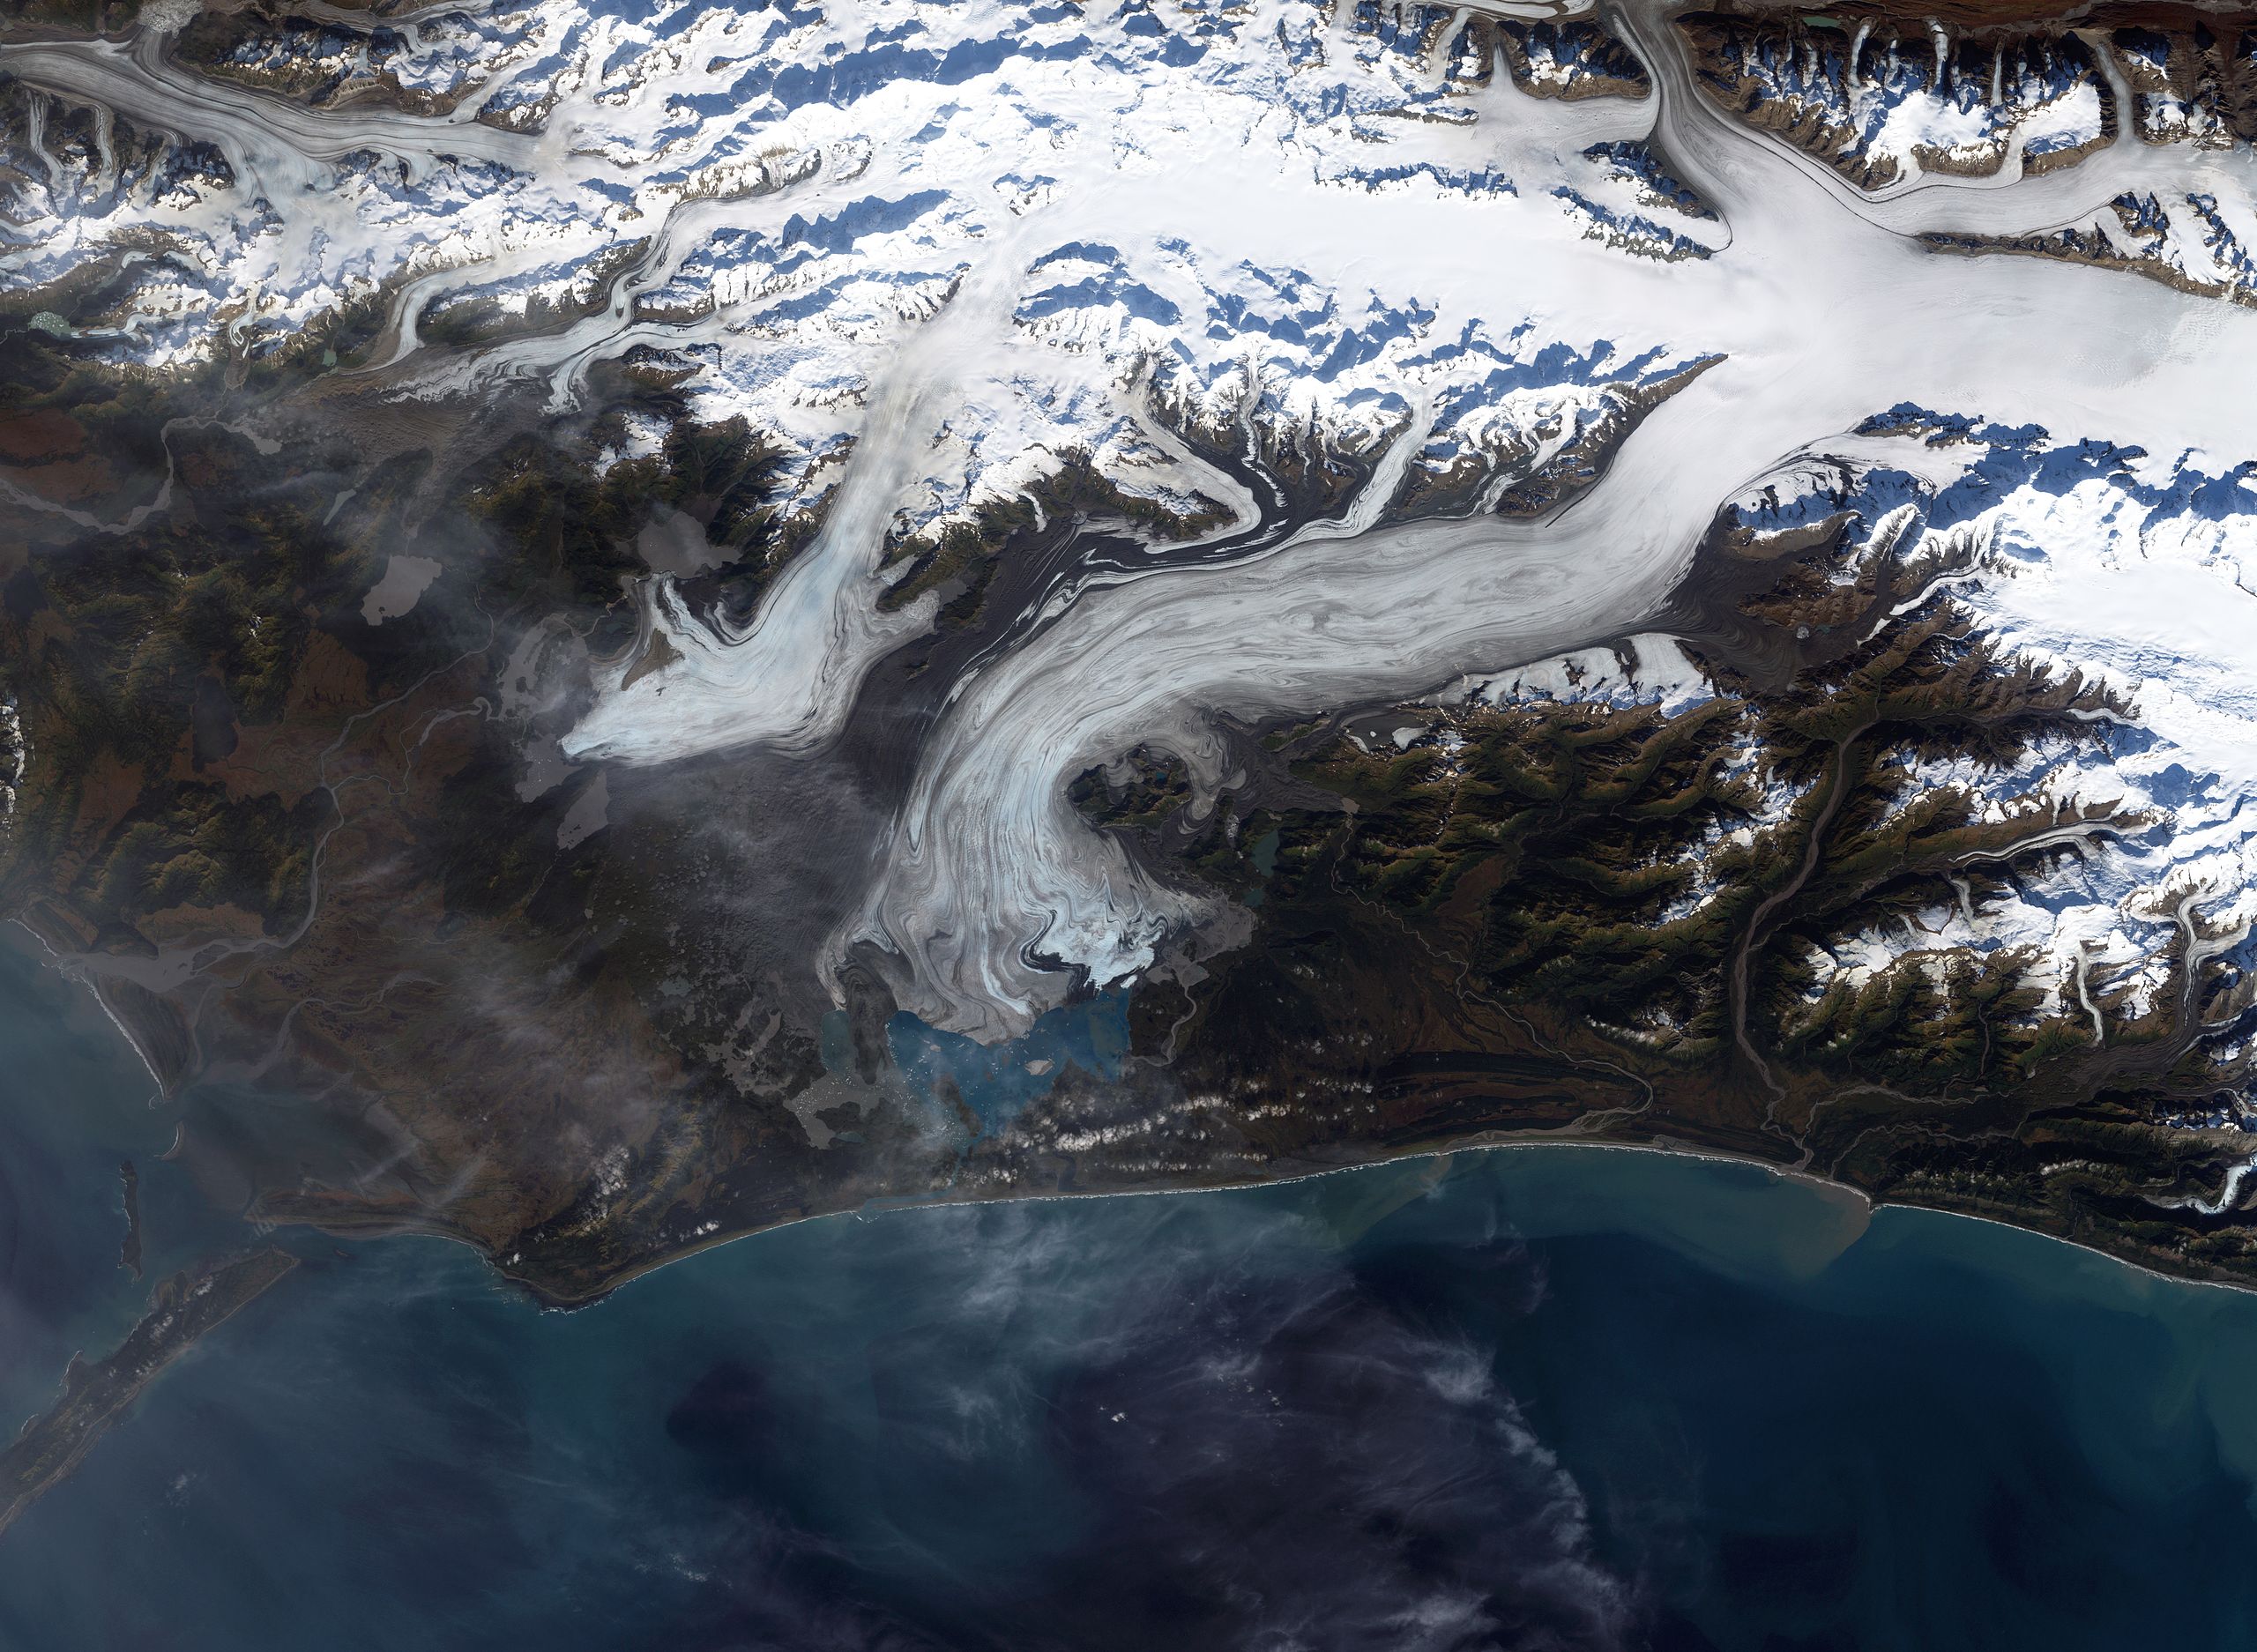 Bering glacier near the study site (figure source: NASA)